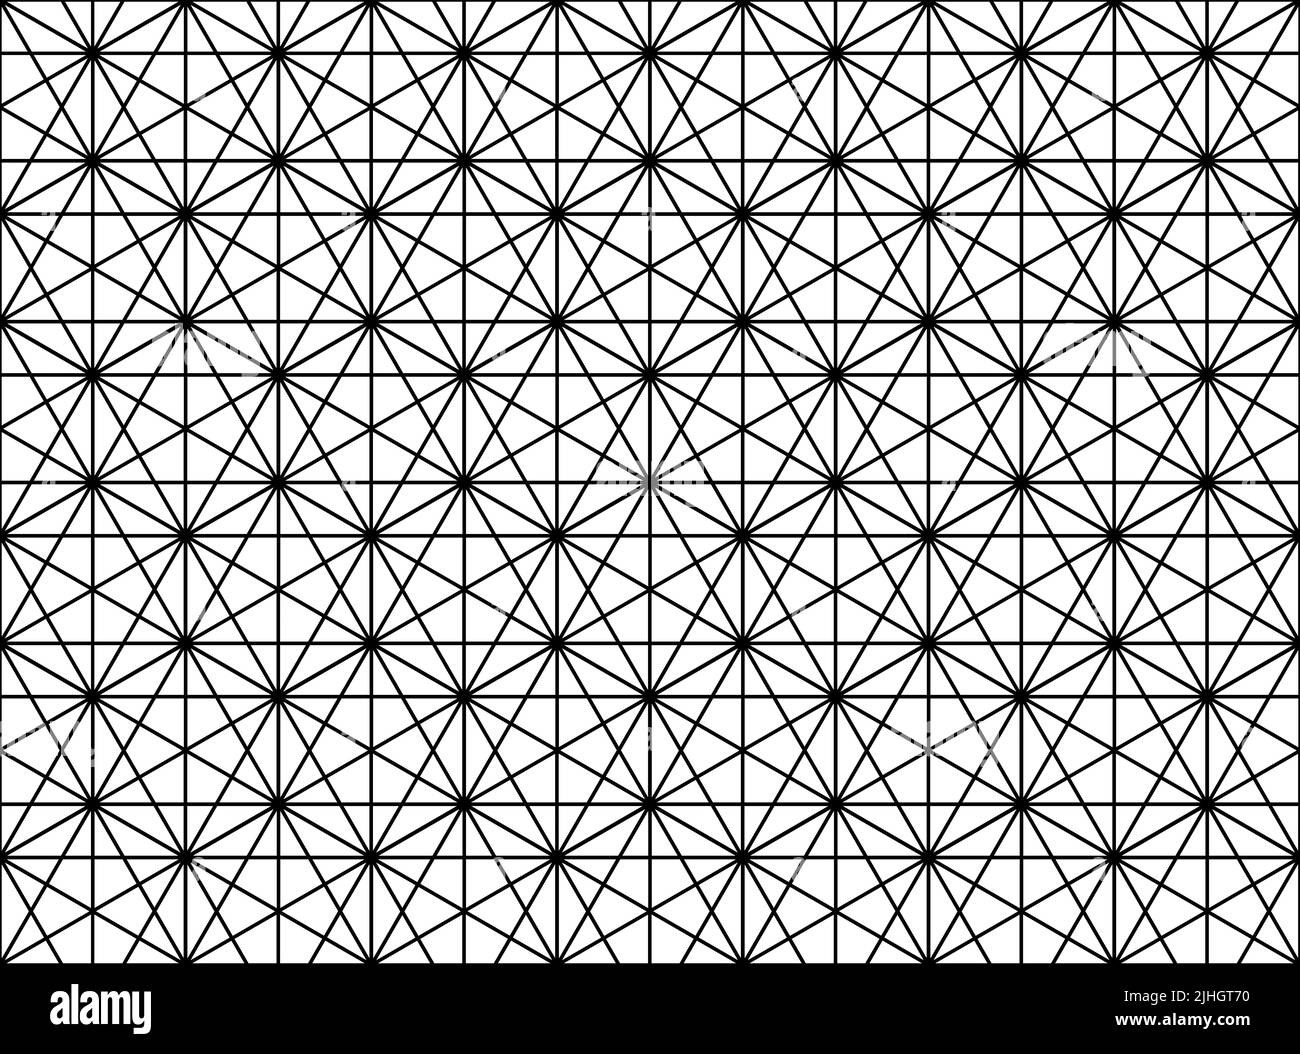 Nahtloses geometrisches Muster, schwarze Umrissdarstellung auf weißem Hintergrund, abstrakte digitale Illustration Stockfoto